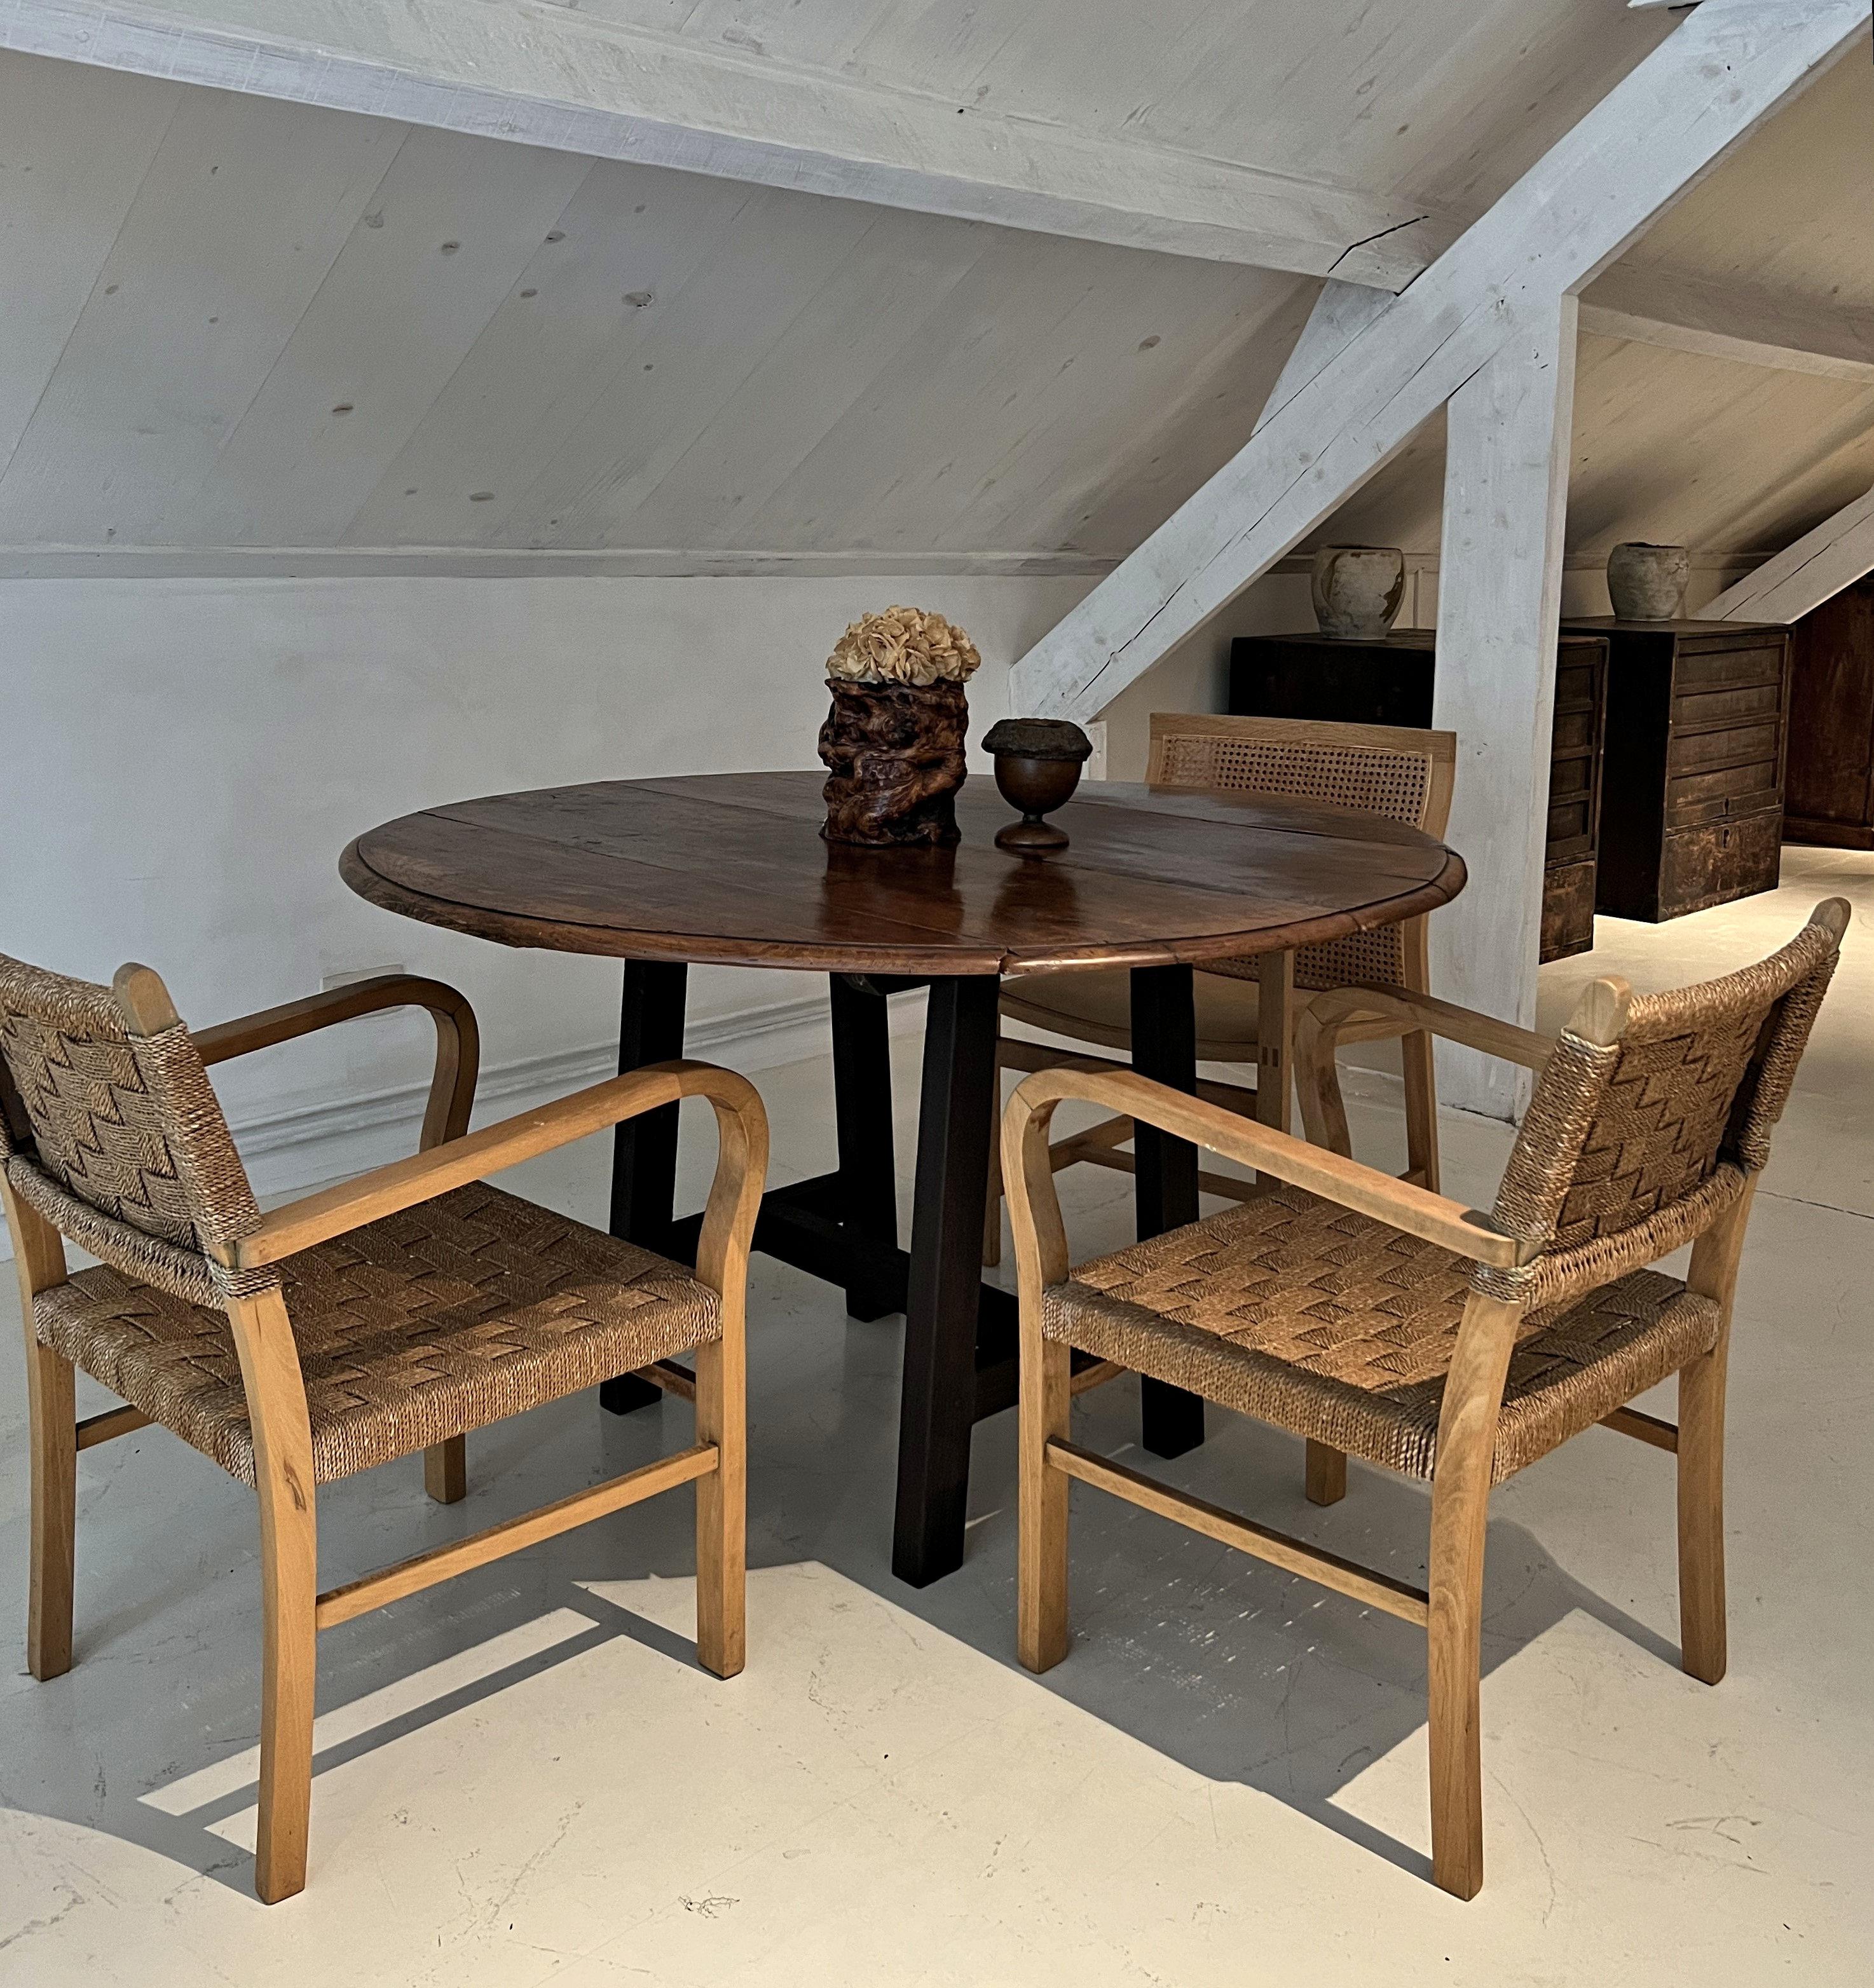 Ein seltenes Paar Bauhaus-Sessel, entworfen von Erich Dieckman. Dieckman war ein wichtiger Bauhaus-Designer, der mit streng geometrischen Möbeln begann. Nach einer Weile baute er organischere Formen aus Massivholz wie Buche und Eiche ein. Ein